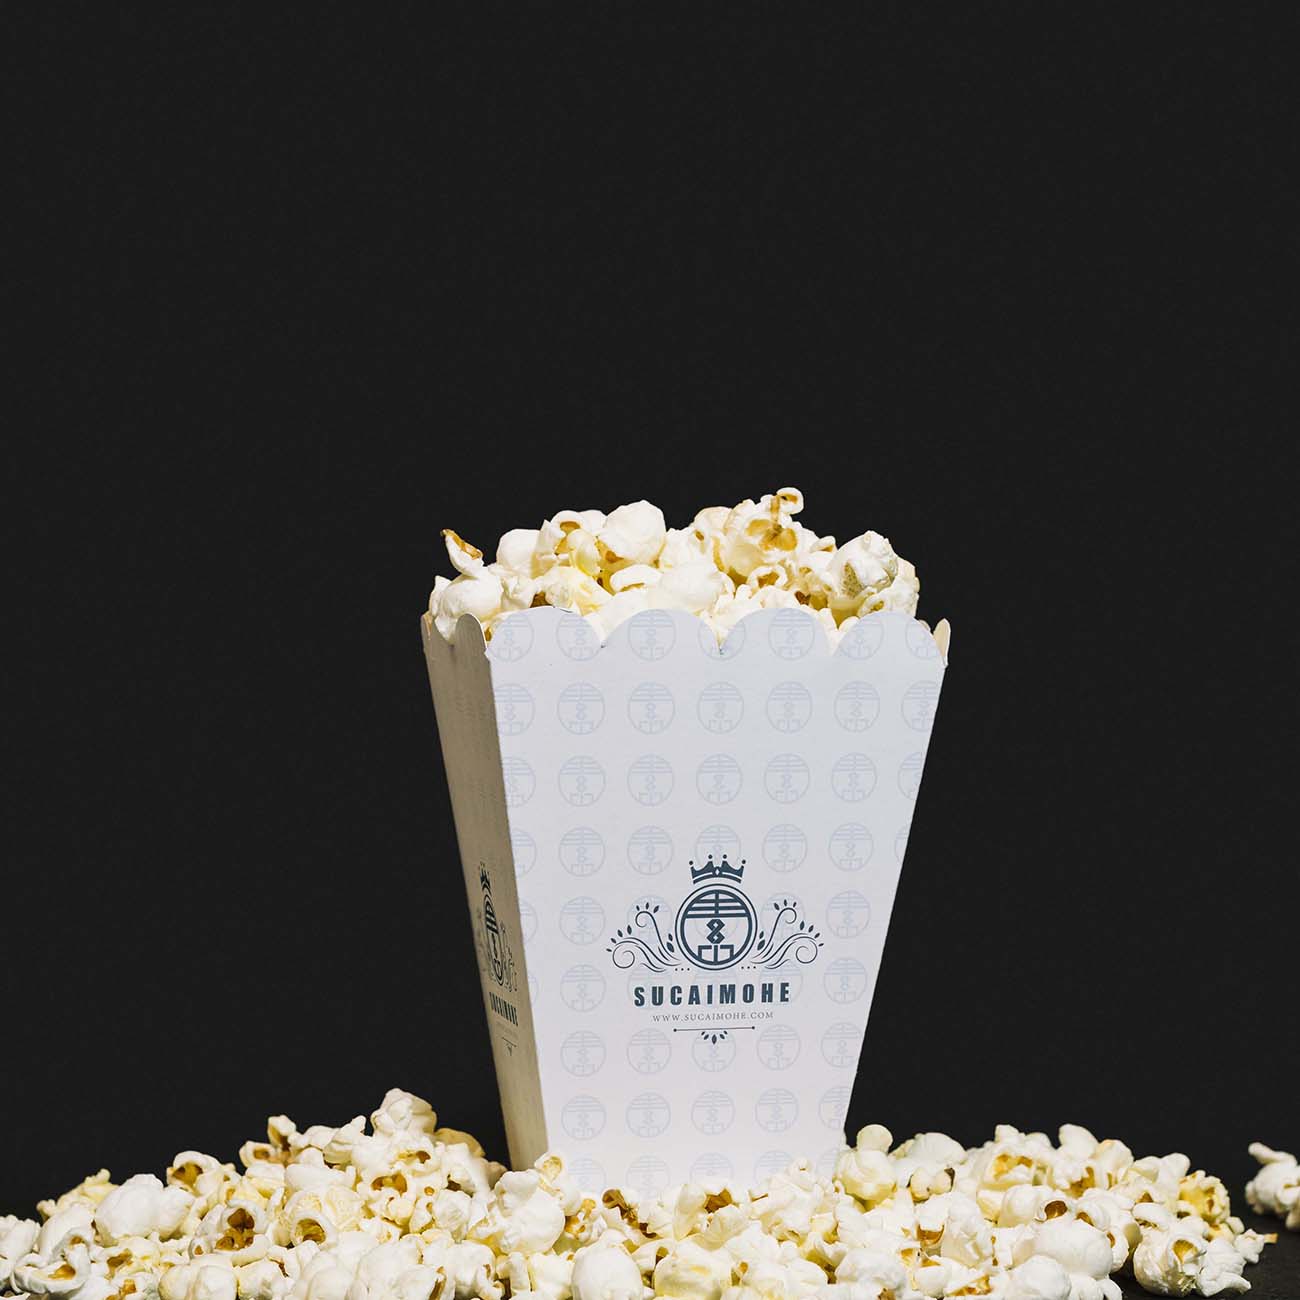 电影院餐厅爆米花桶包装样机PSD源文件front-view-cinema-popcorn